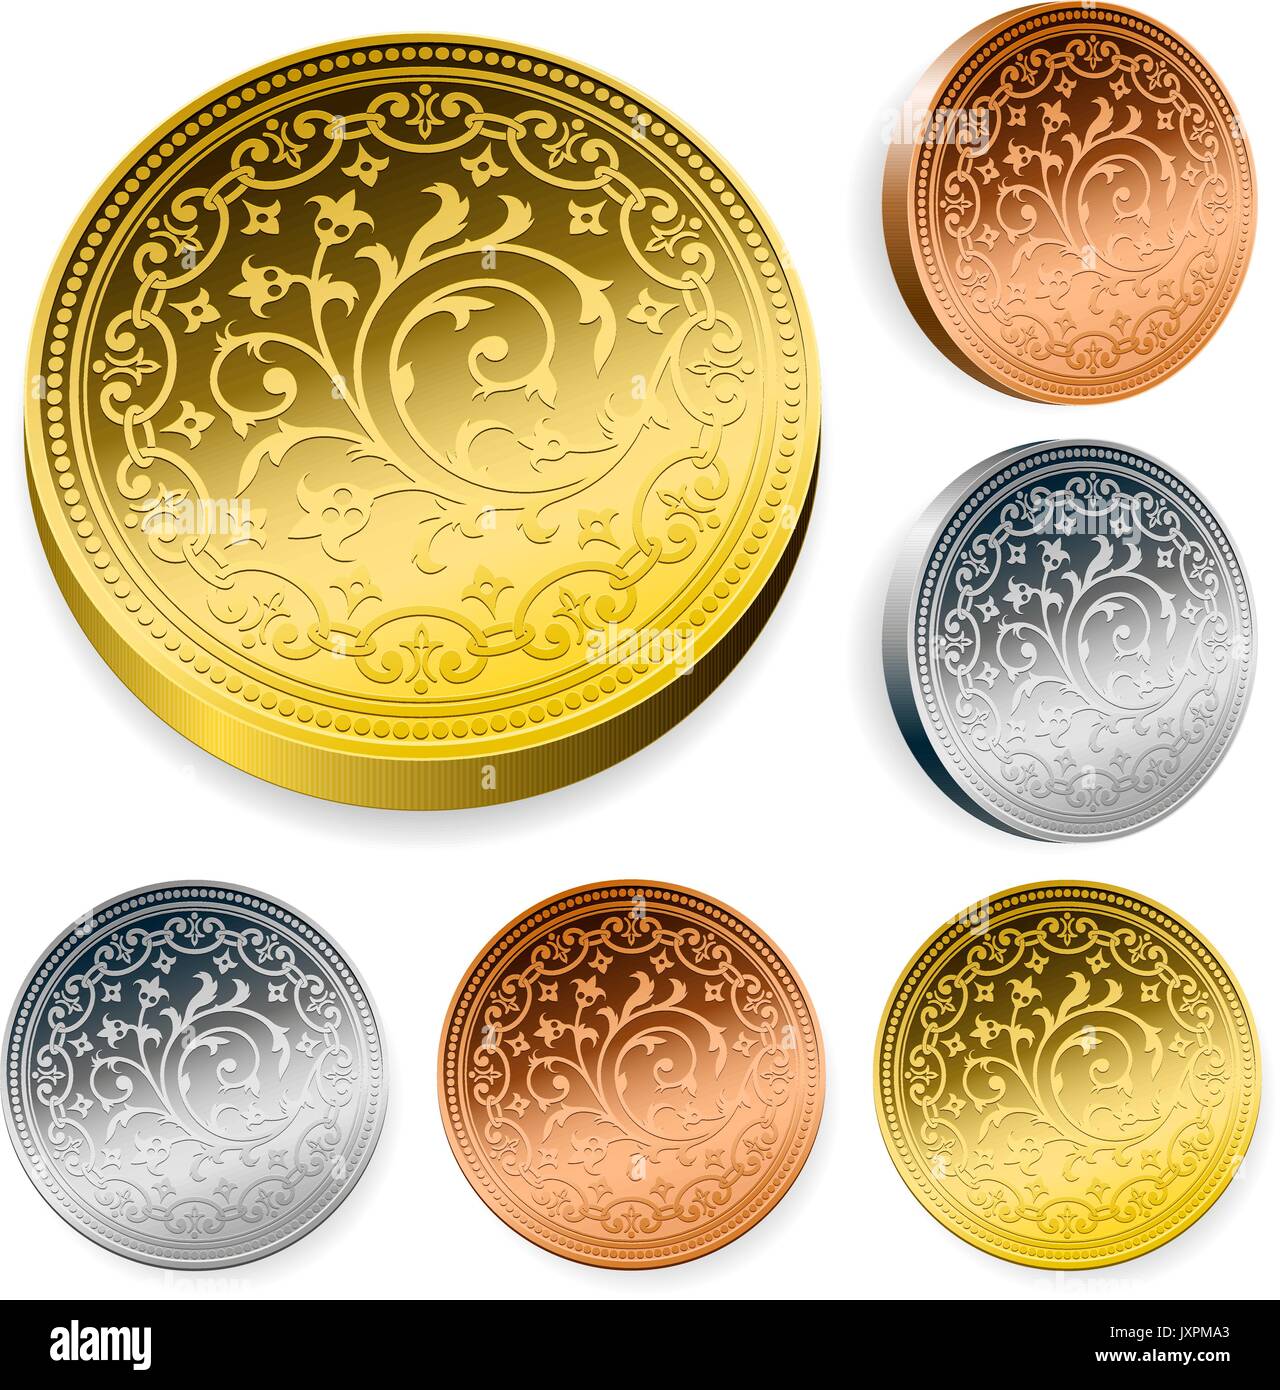 Satz von kunstvoll gravierte Metall Münzen in Gold, Silber, und Bronze mit einem komplizierten Blättern und Blumen Design und metallischen Glanz zwei Sätze in verschiedenen orie Stock Vektor